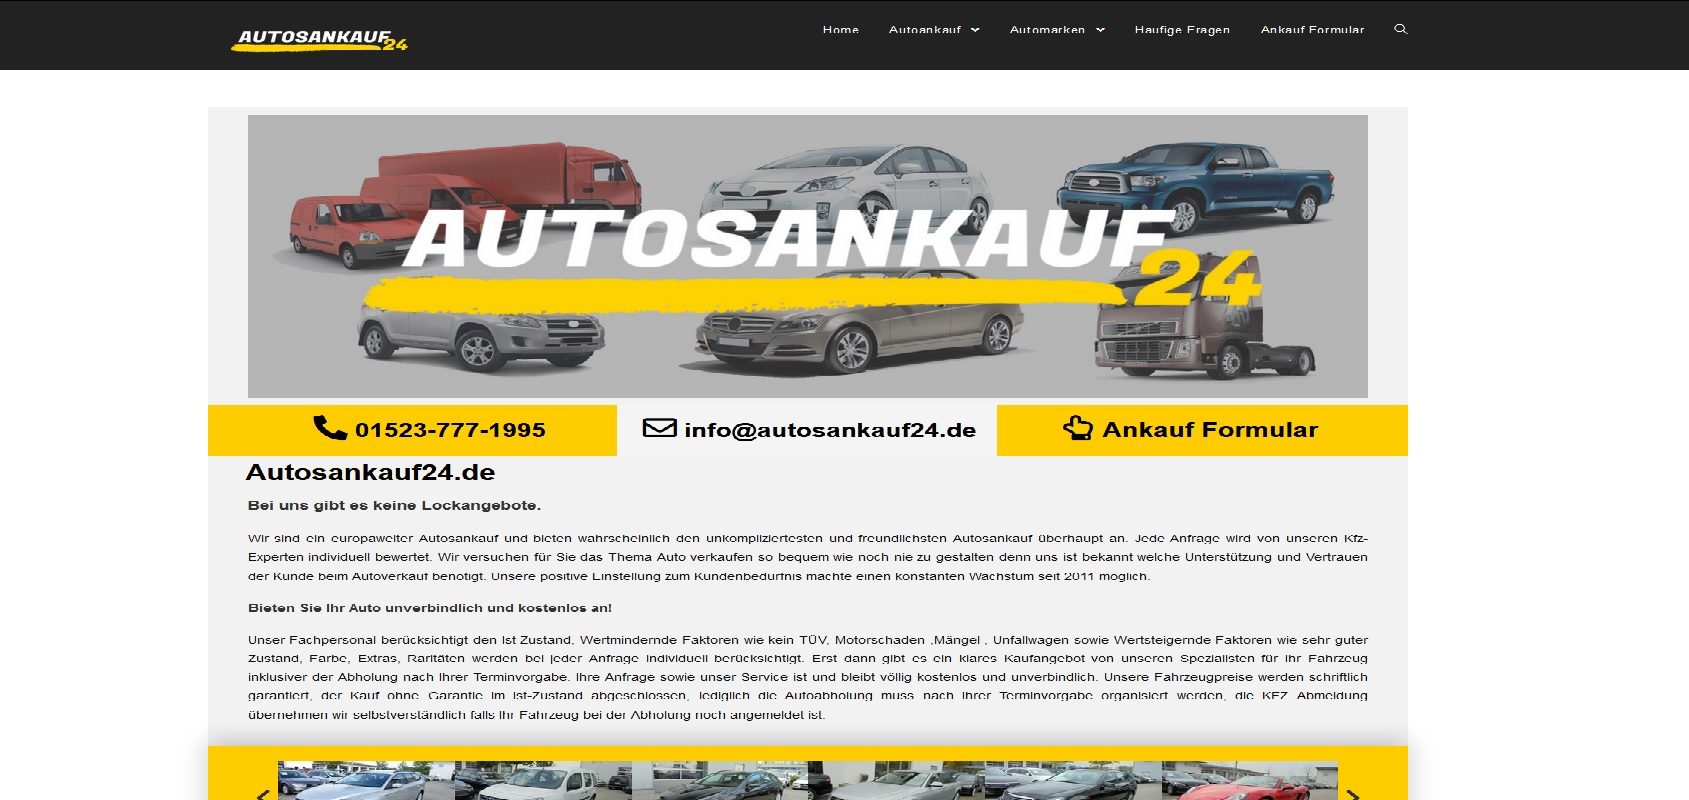 autosankauf24 de bietet top kontitionen bei gebrauchtwagen ankauf - Autosankauf24.de bietet Top Kontitionen bei Gebrauchtwagen Ankauf